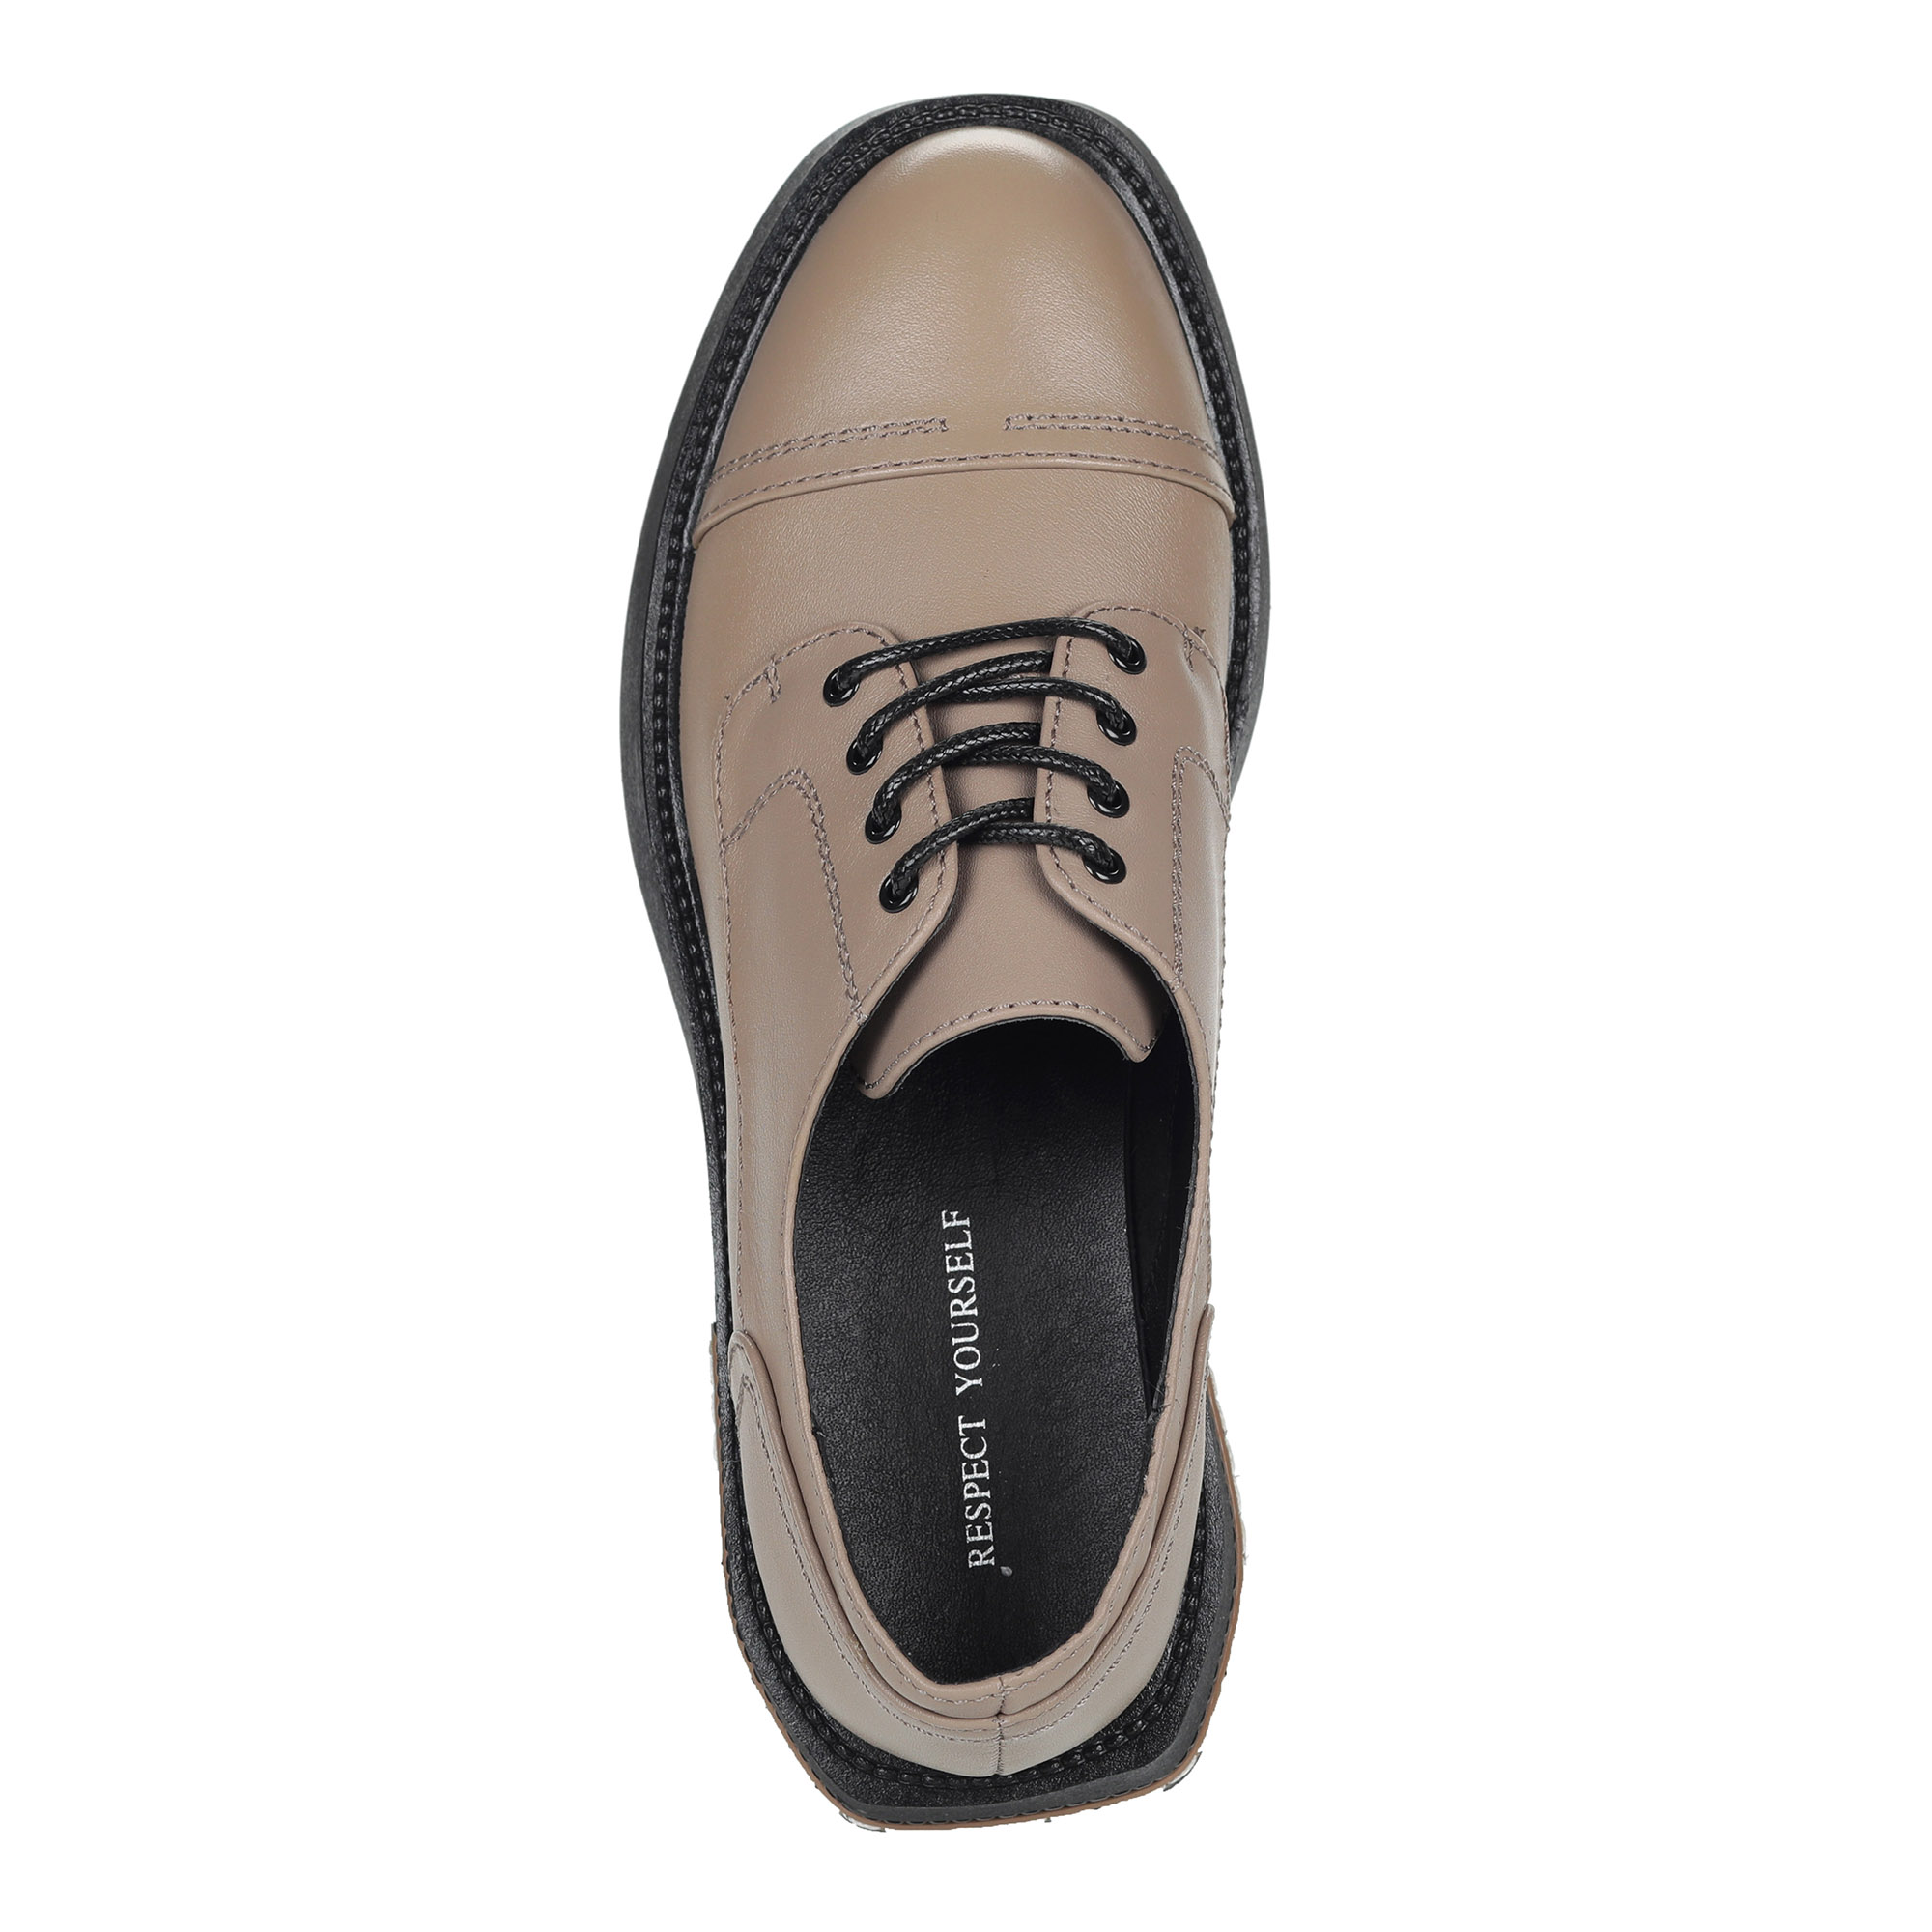 Бежевые полуботинки из кожи на шнуровке от Respect-shoes